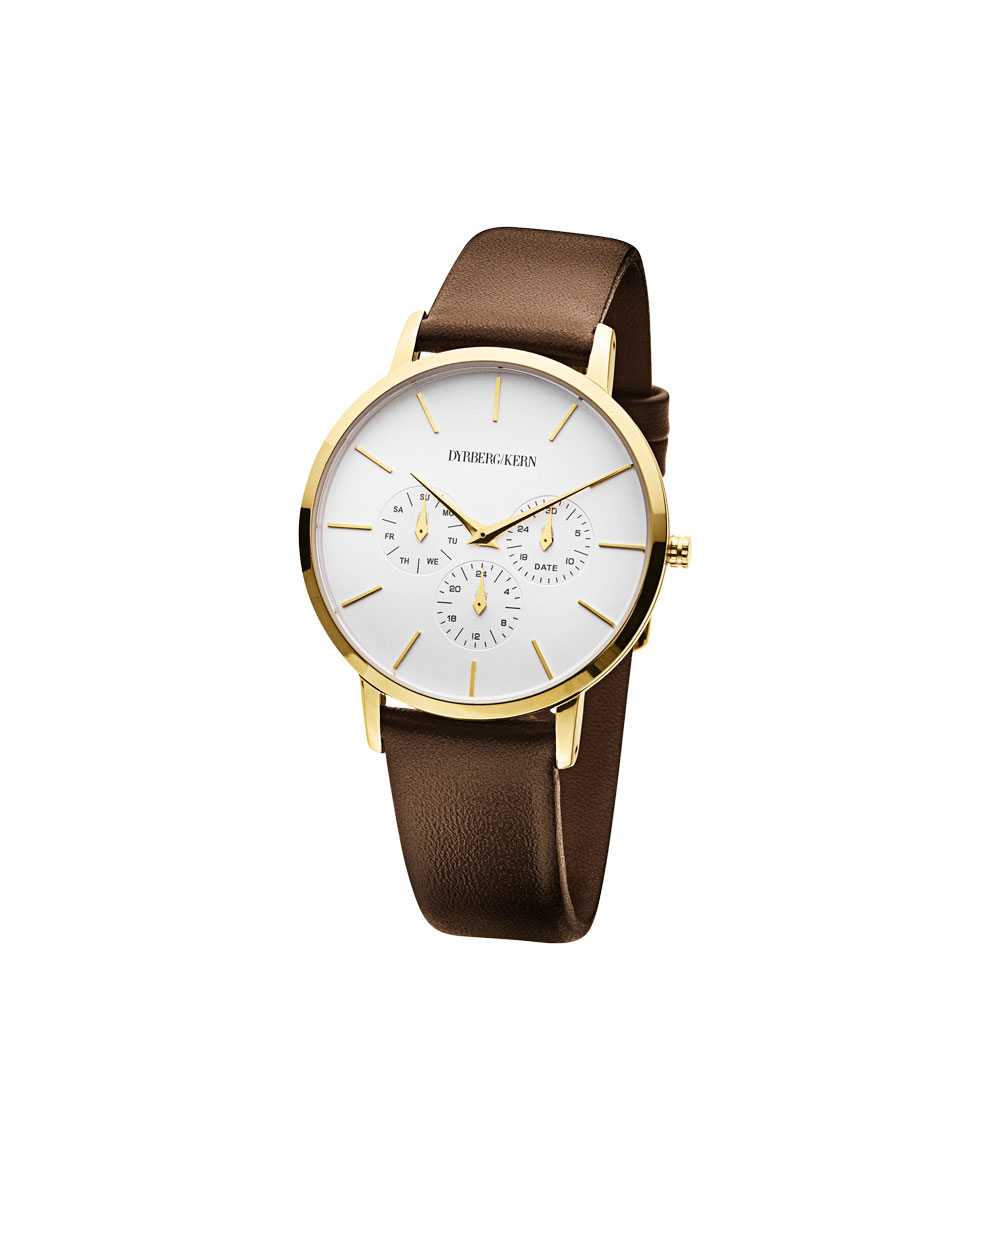 Dyrberg/Kern watch, $599